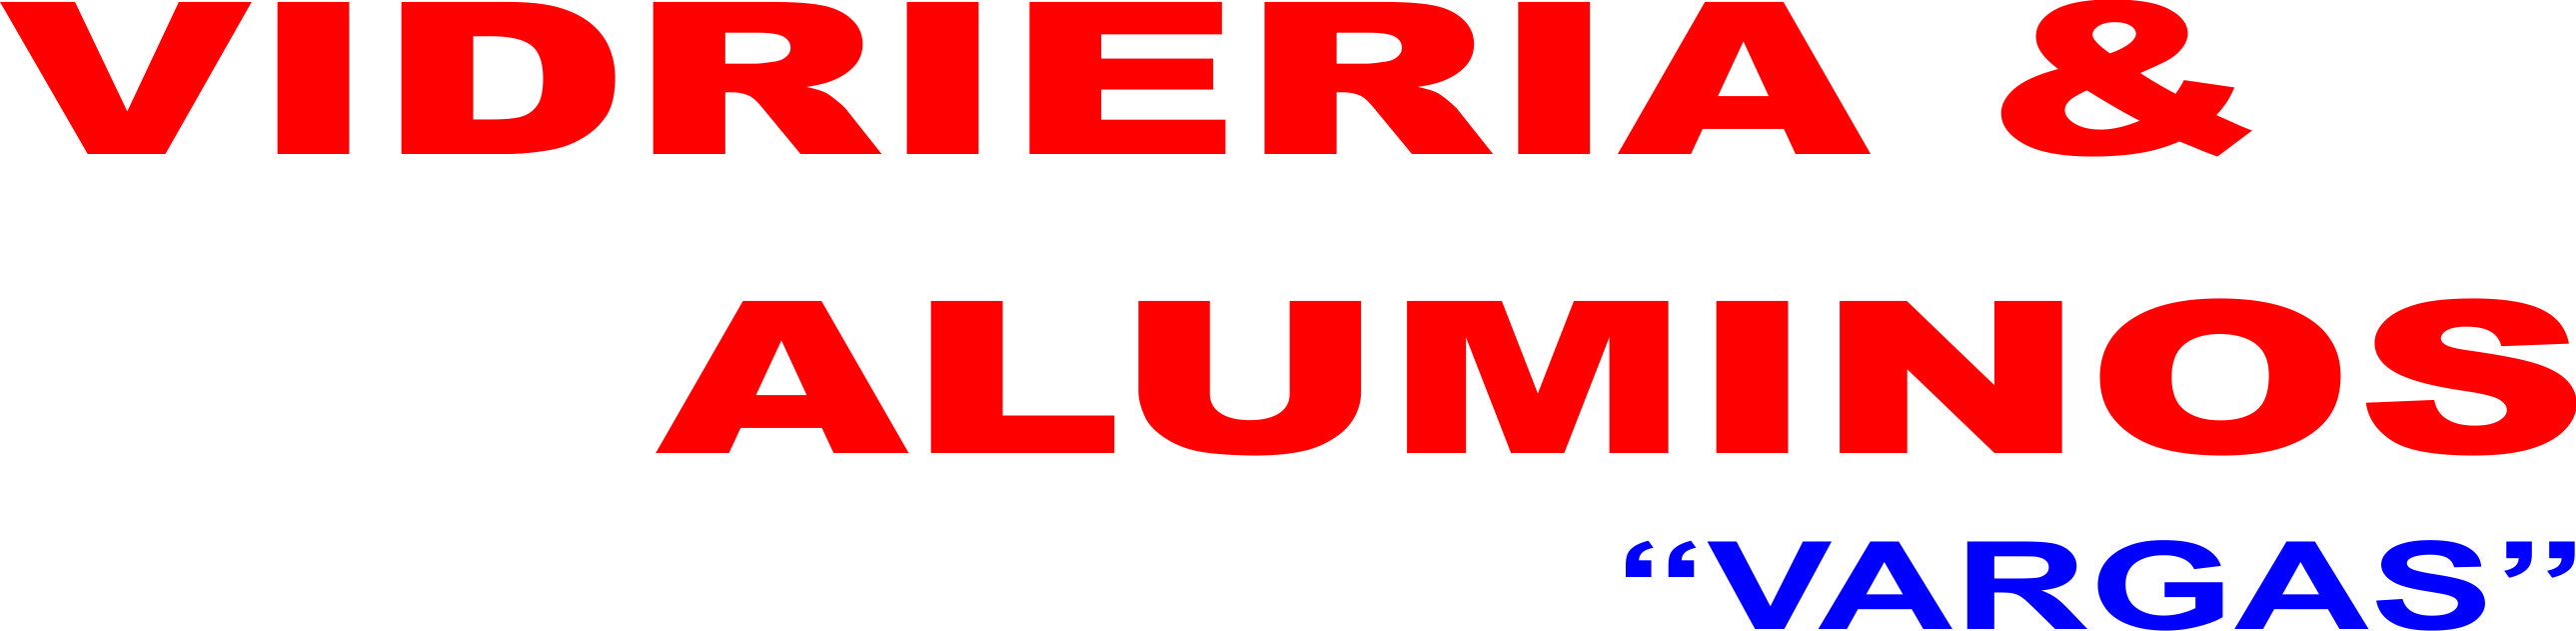 Vidriería y Aluminios Vargas S.A.C. logo